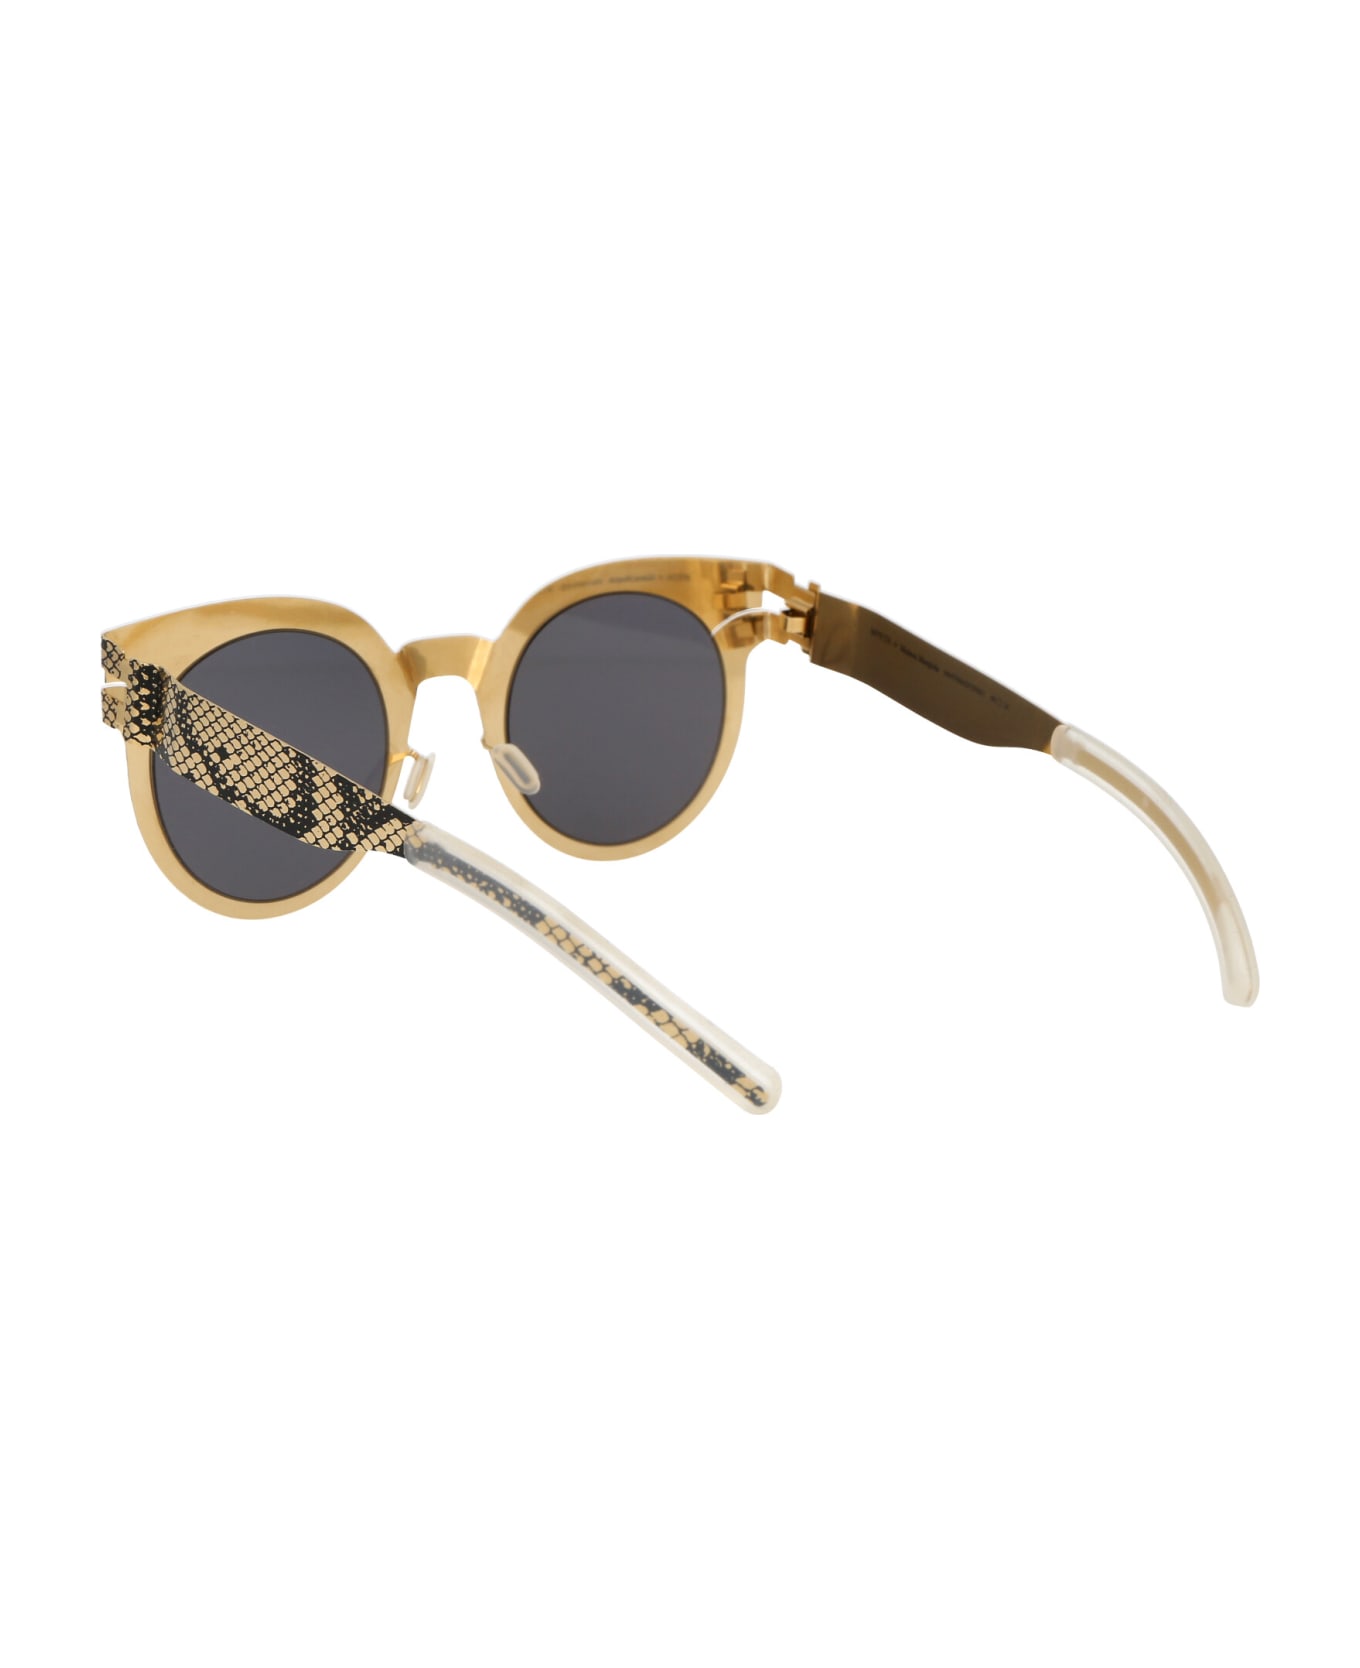 Mykita Mmtransfer001 Sunglasses - 239 Gold Black Python Dark Grey Solid サングラス